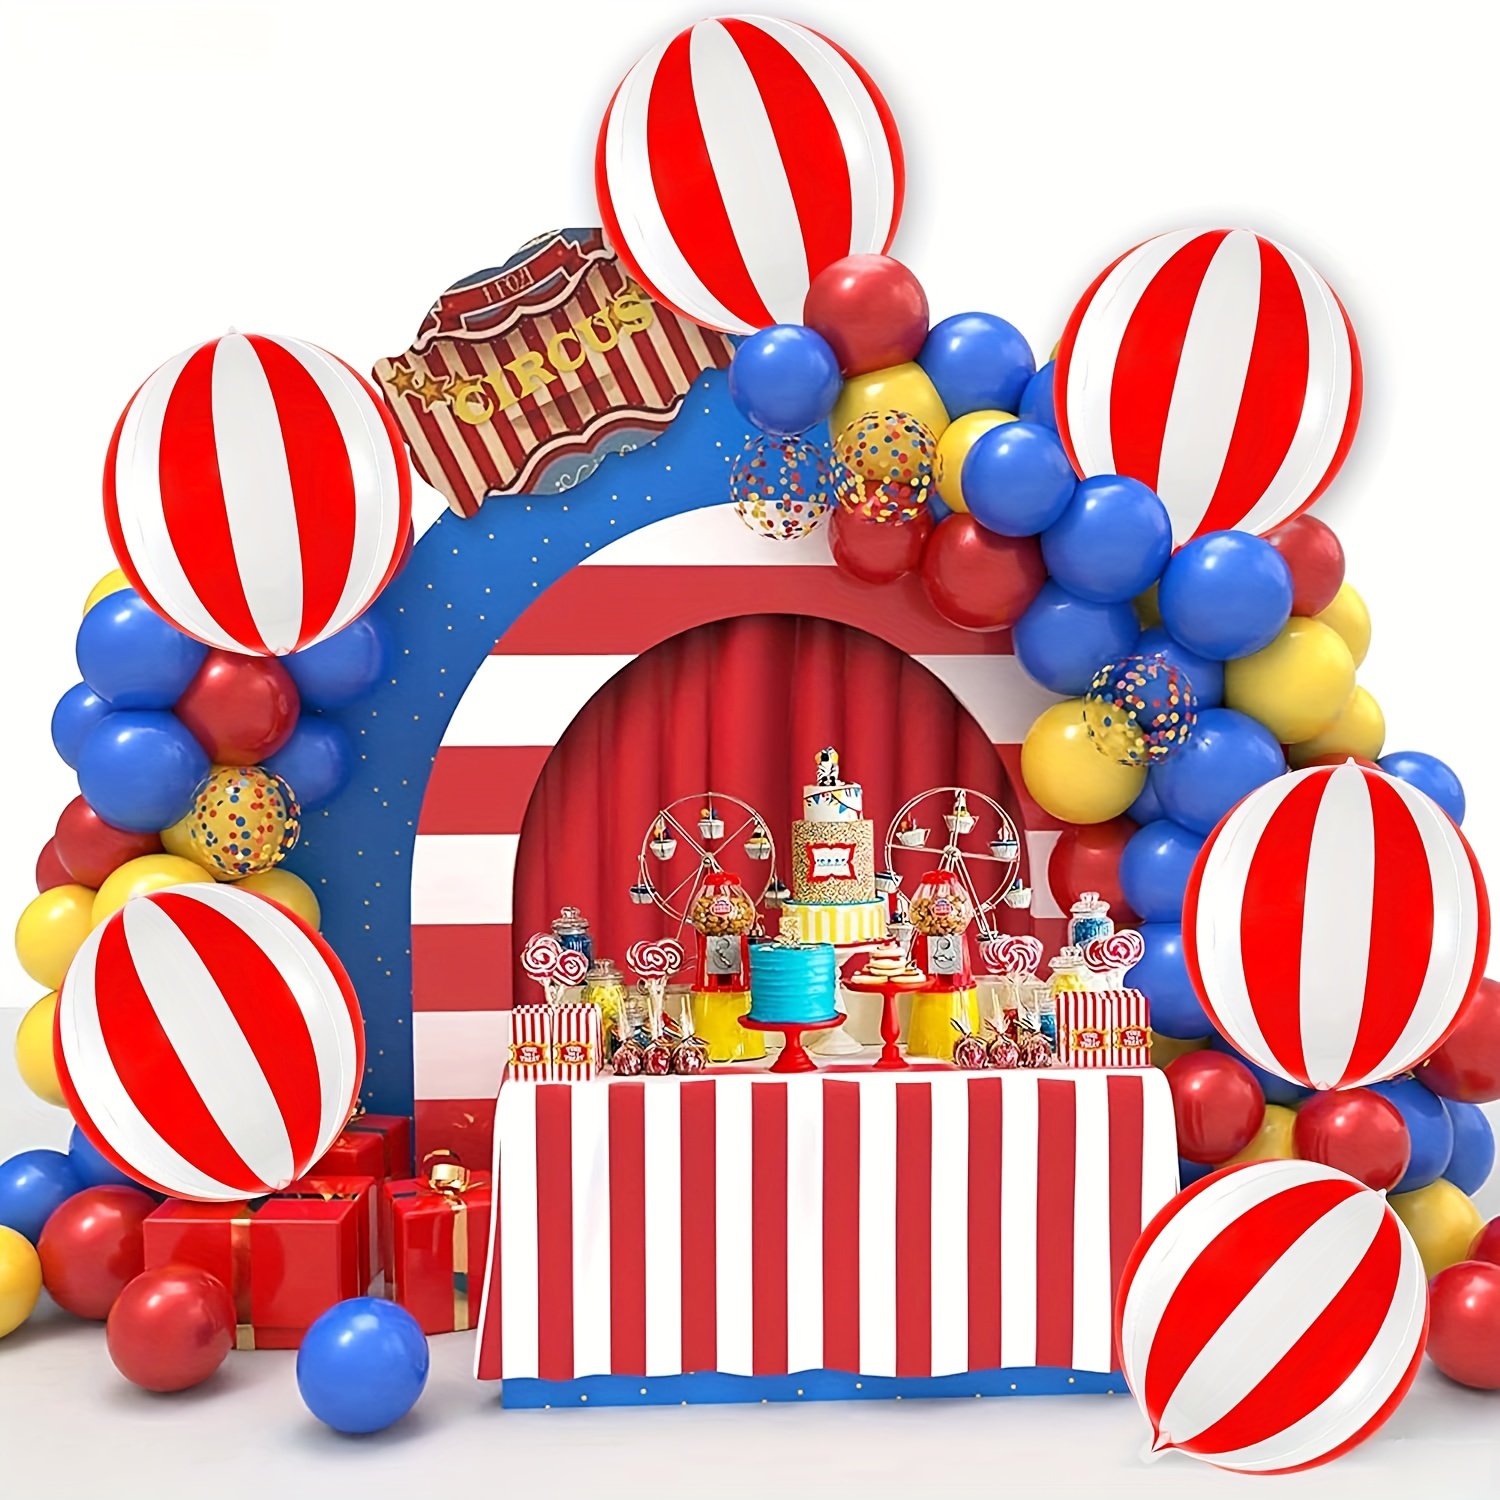 Set di palloncini pagliaccio giganti da 32 pollici - Confezione Da 6, Decorazioni per feste a tema di carnevale, Palloncini di carnevale clown  per decorazioni per feste a tema circense, Carniv